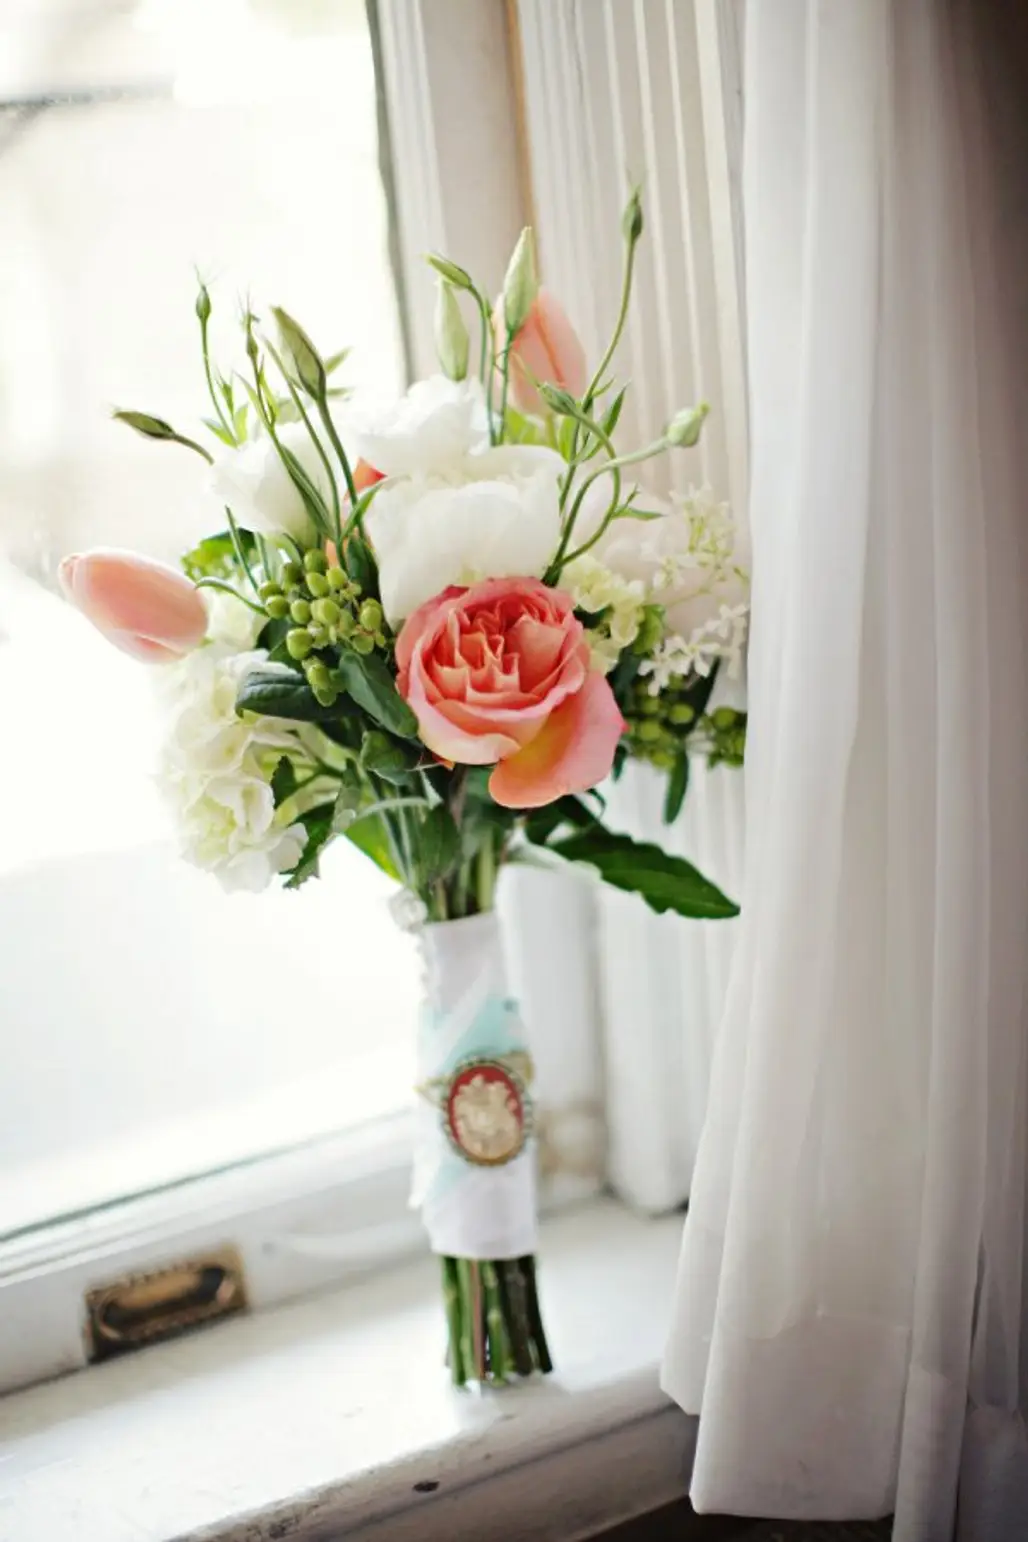 Prop up a Simple Bouquet